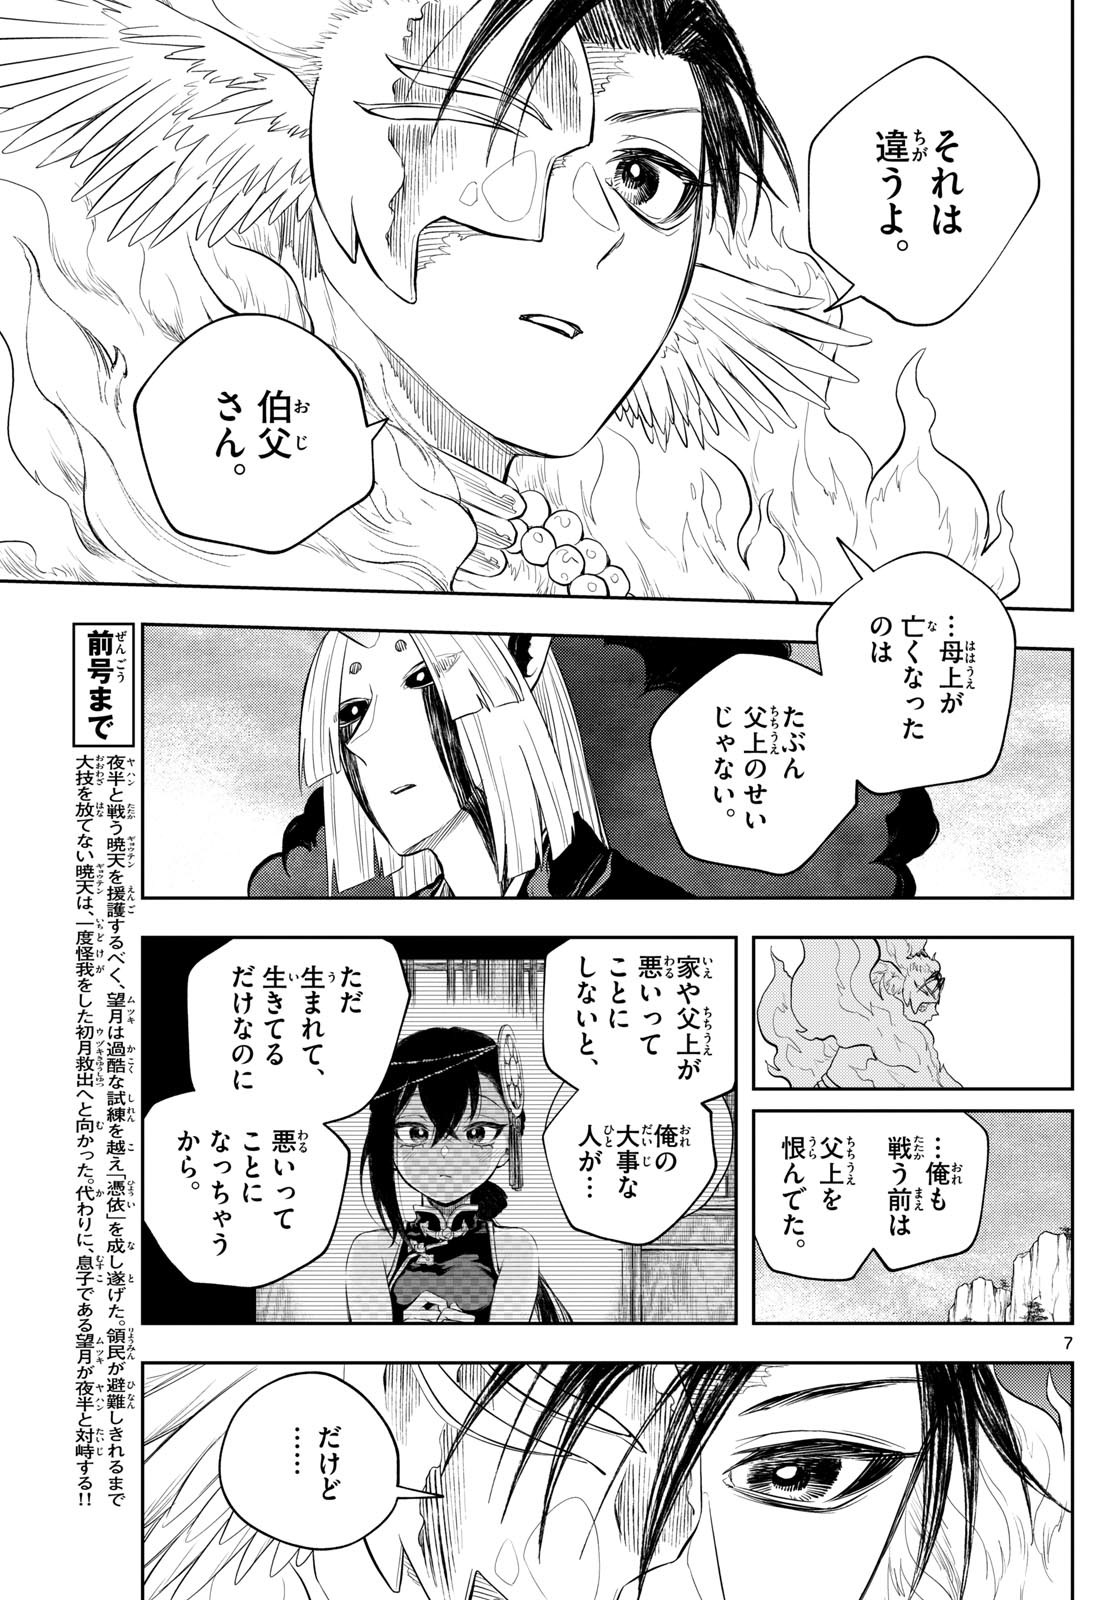 Akatsuki Jihen - Chapter 45 - Page 7